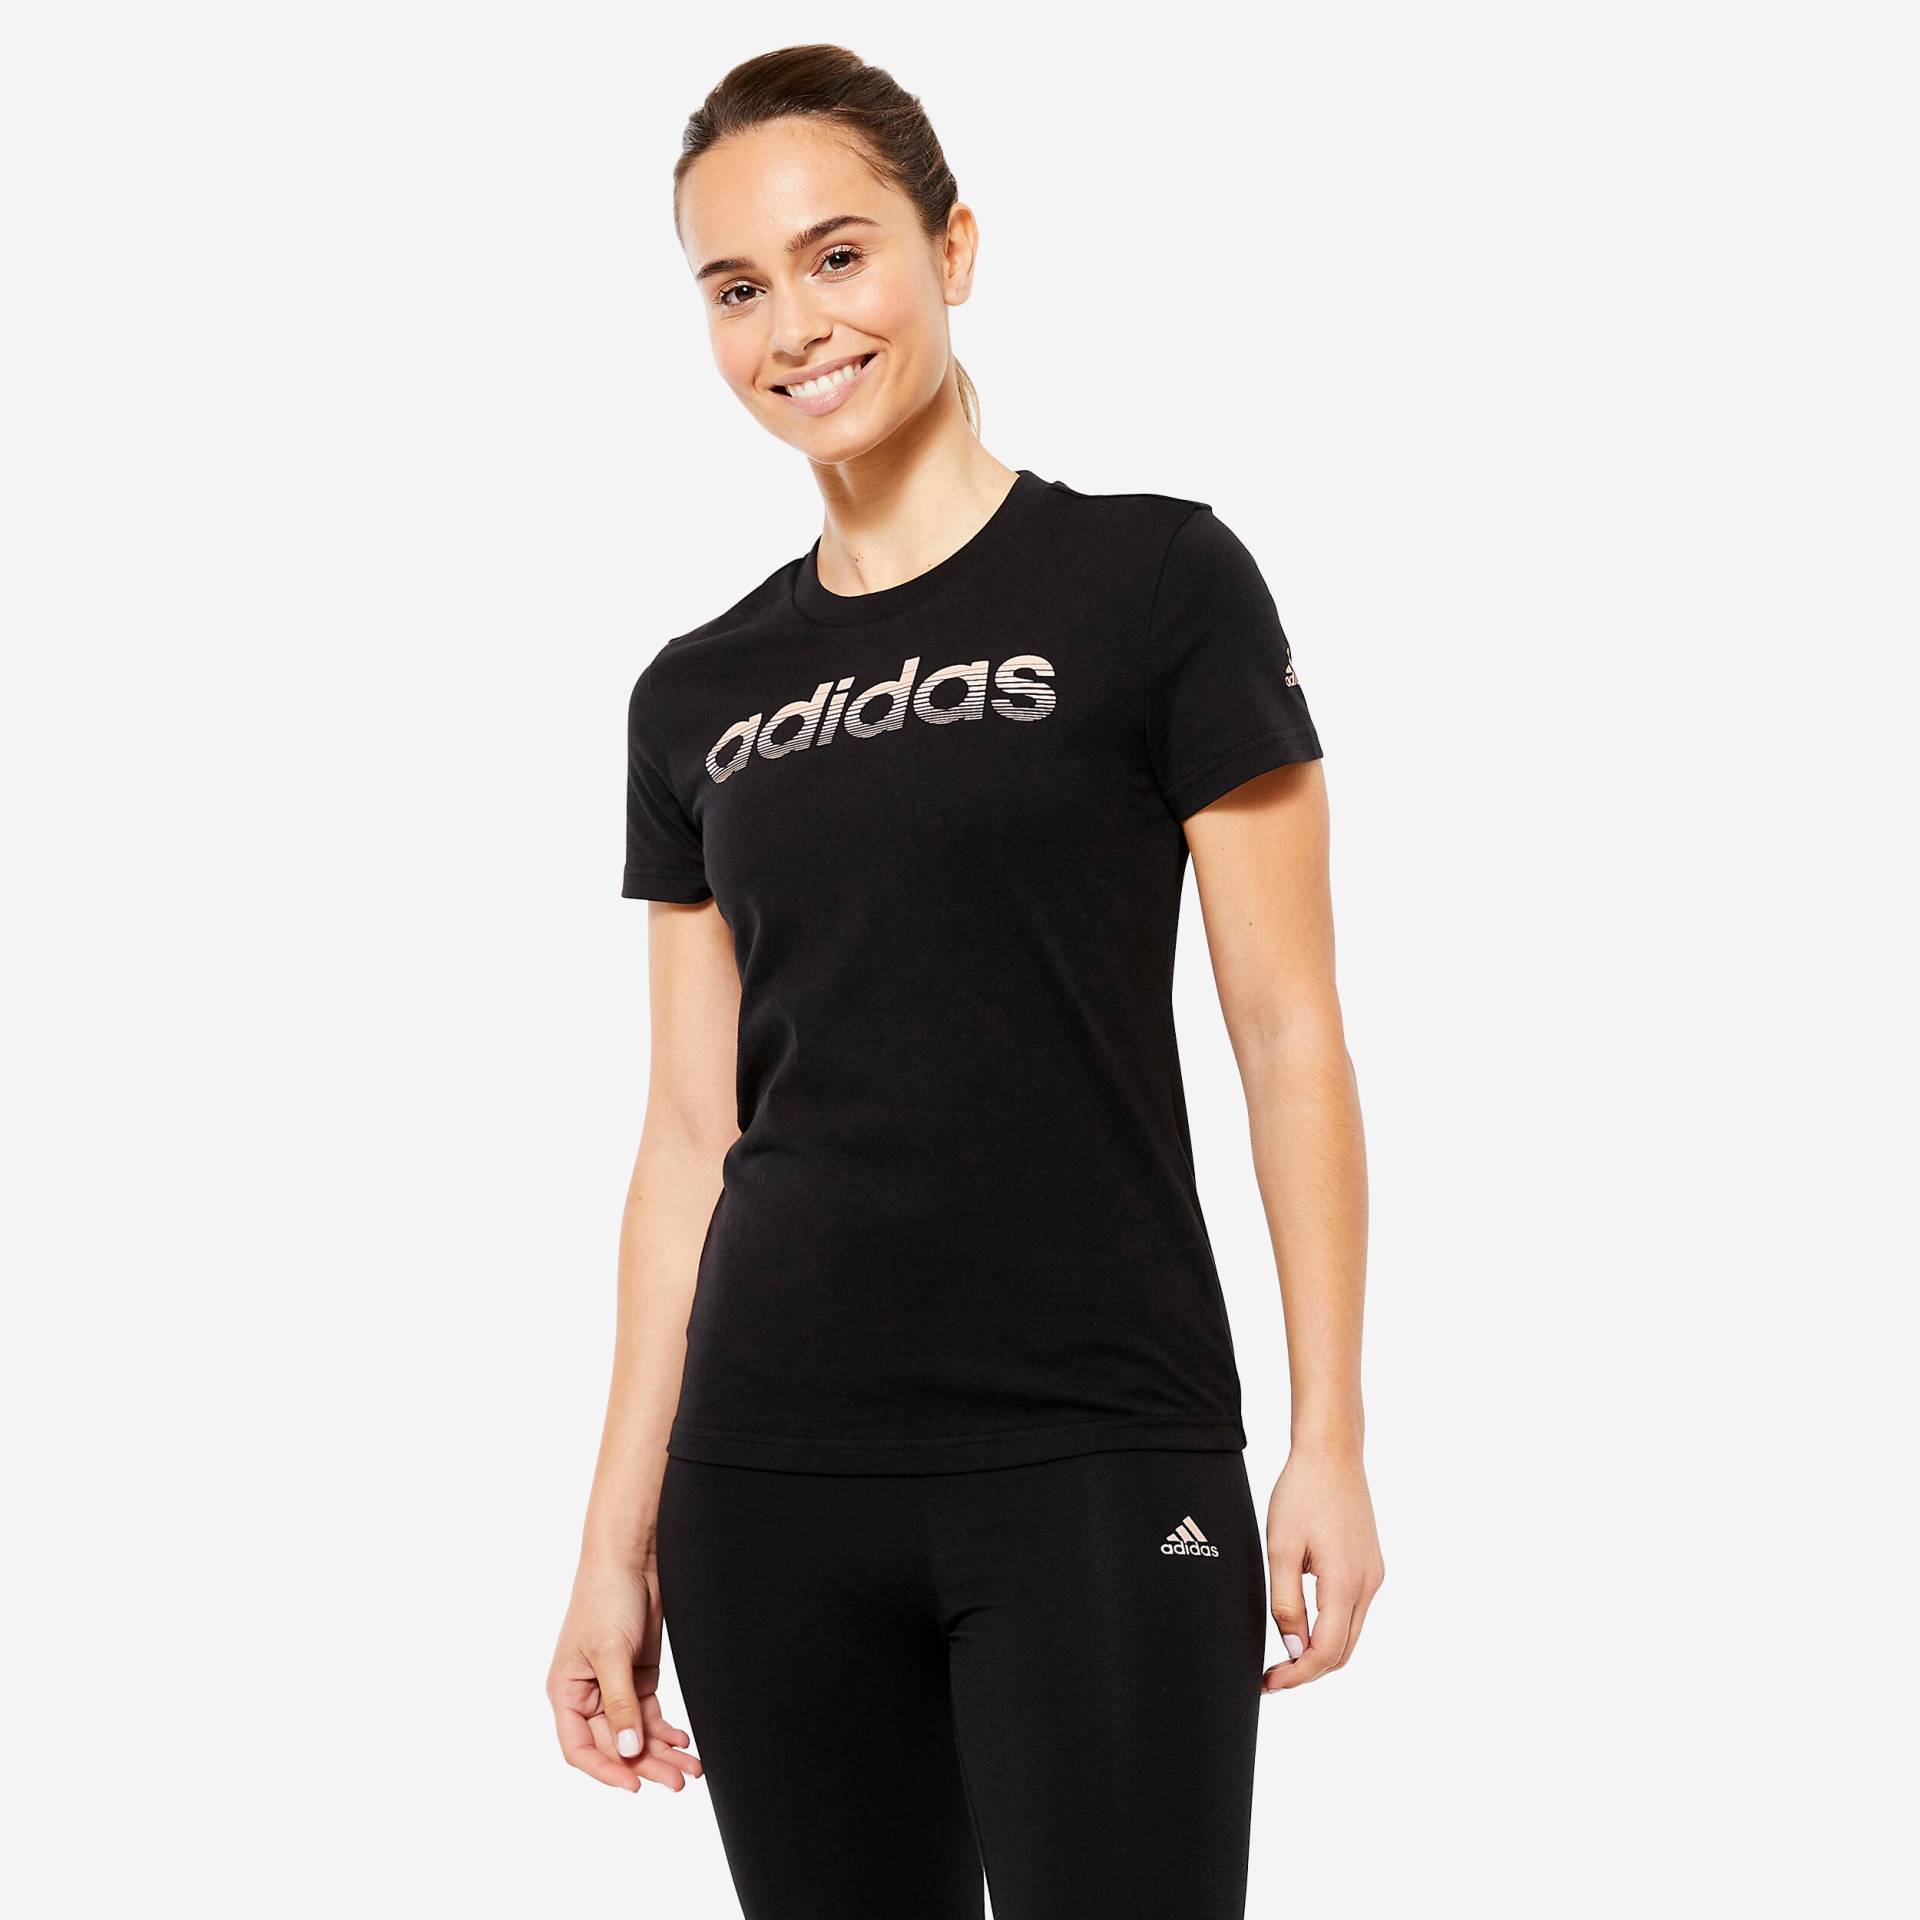 ADIDAS T-Shirt Damen - schwarz von Adidas